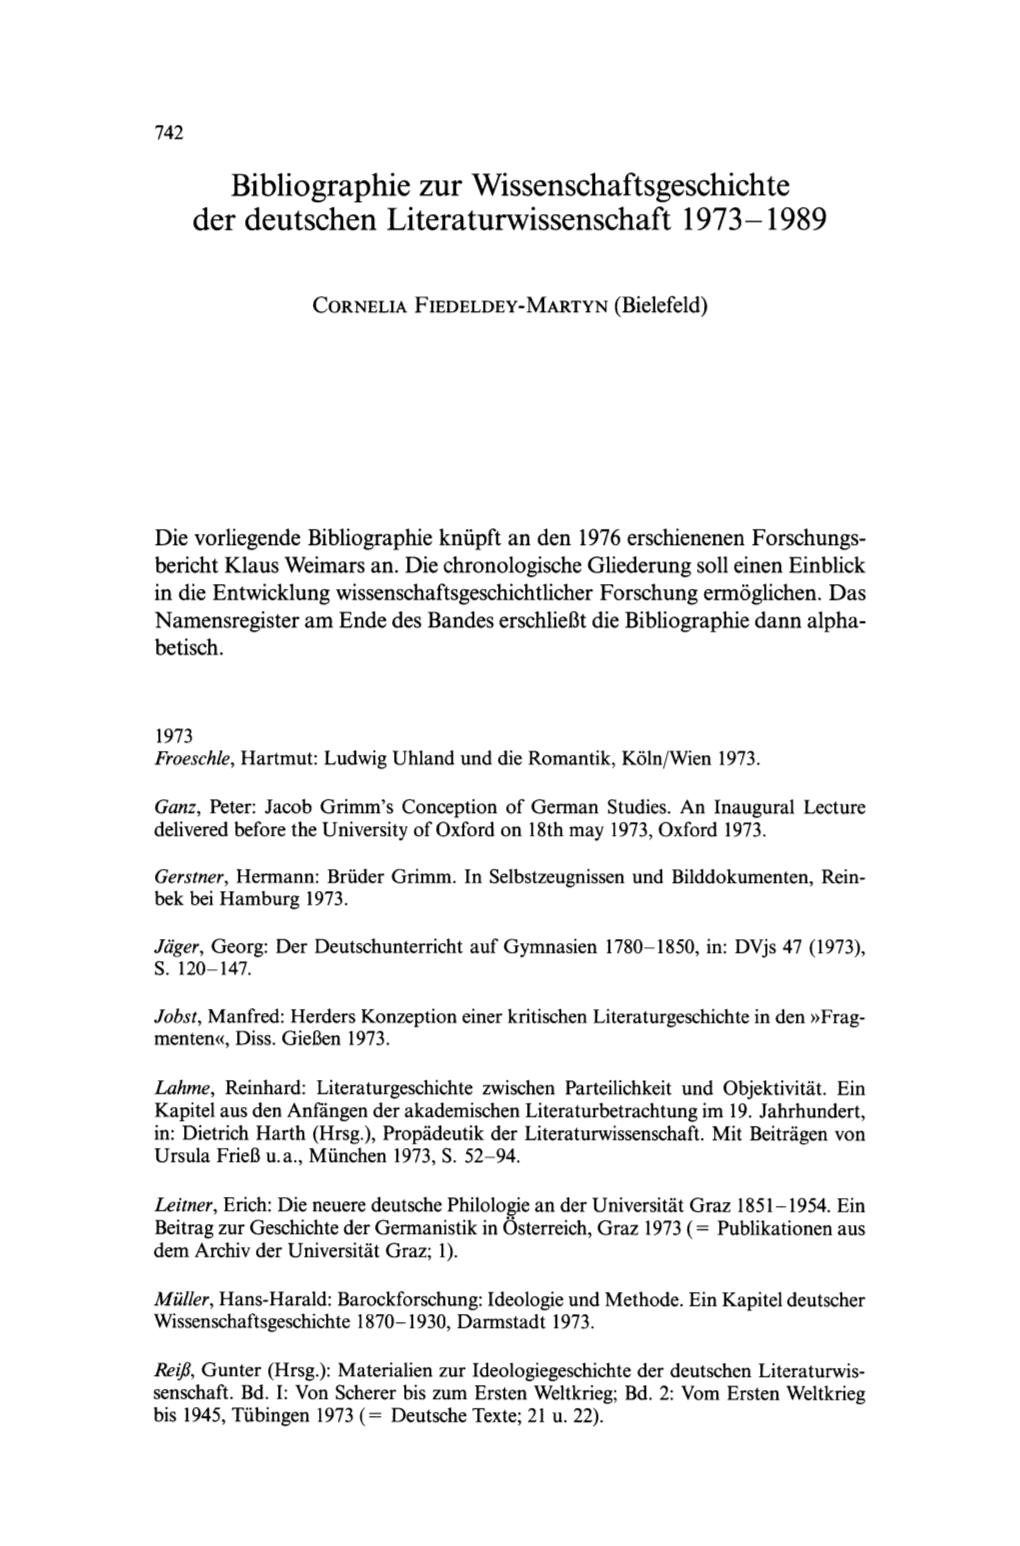 Bibliographie Zur Wissenschaftsgeschichte Der Deutschen Literaturwissenschaft 1973-1989